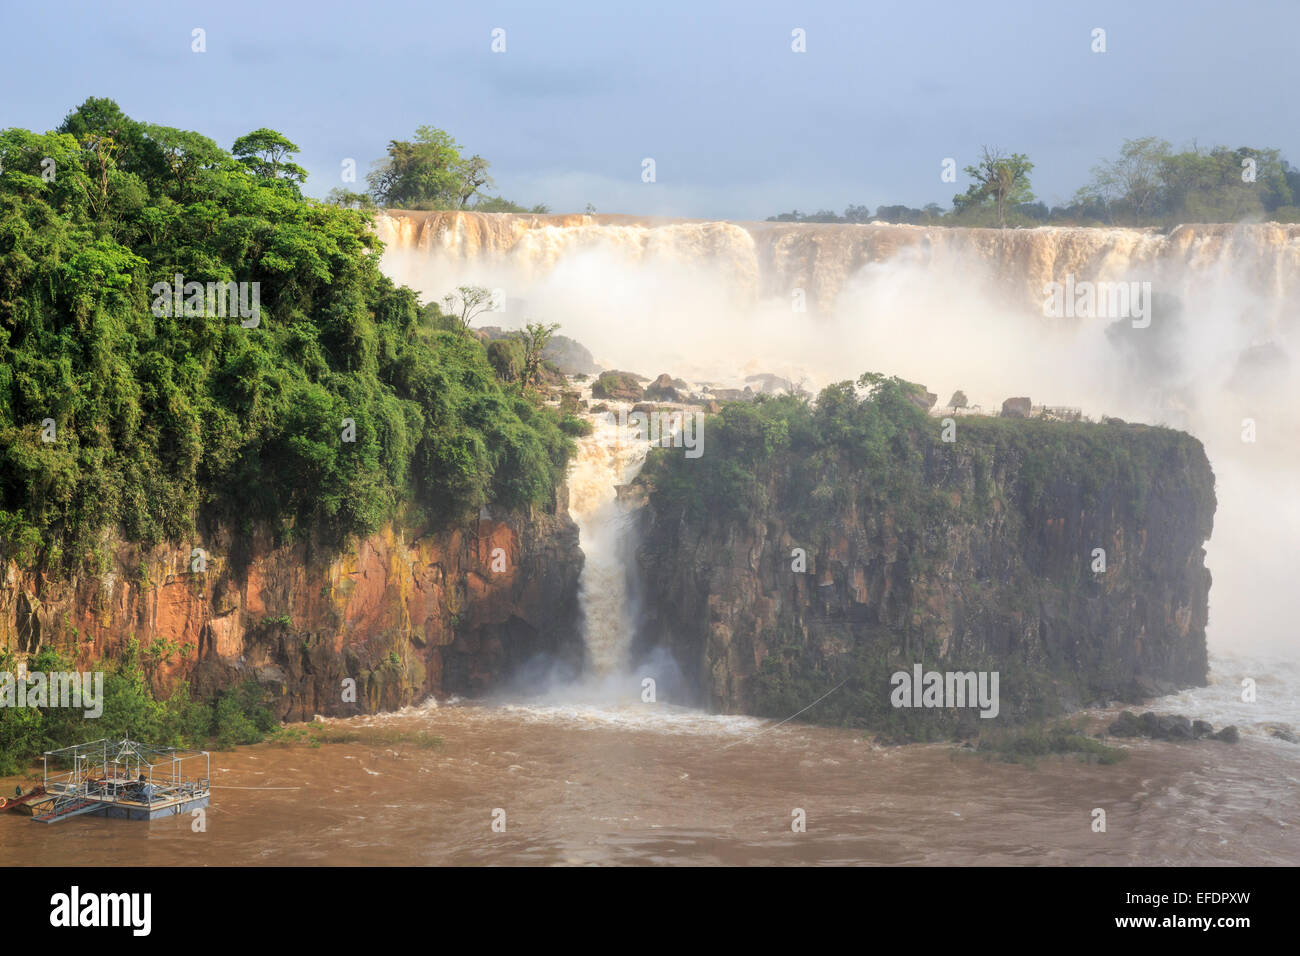 Meraviglie naturali: vista della magnifica enorme Iguazu Falls in piena ondata, visto dal lato Argentino in una giornata di sole con cielo blu Foto Stock